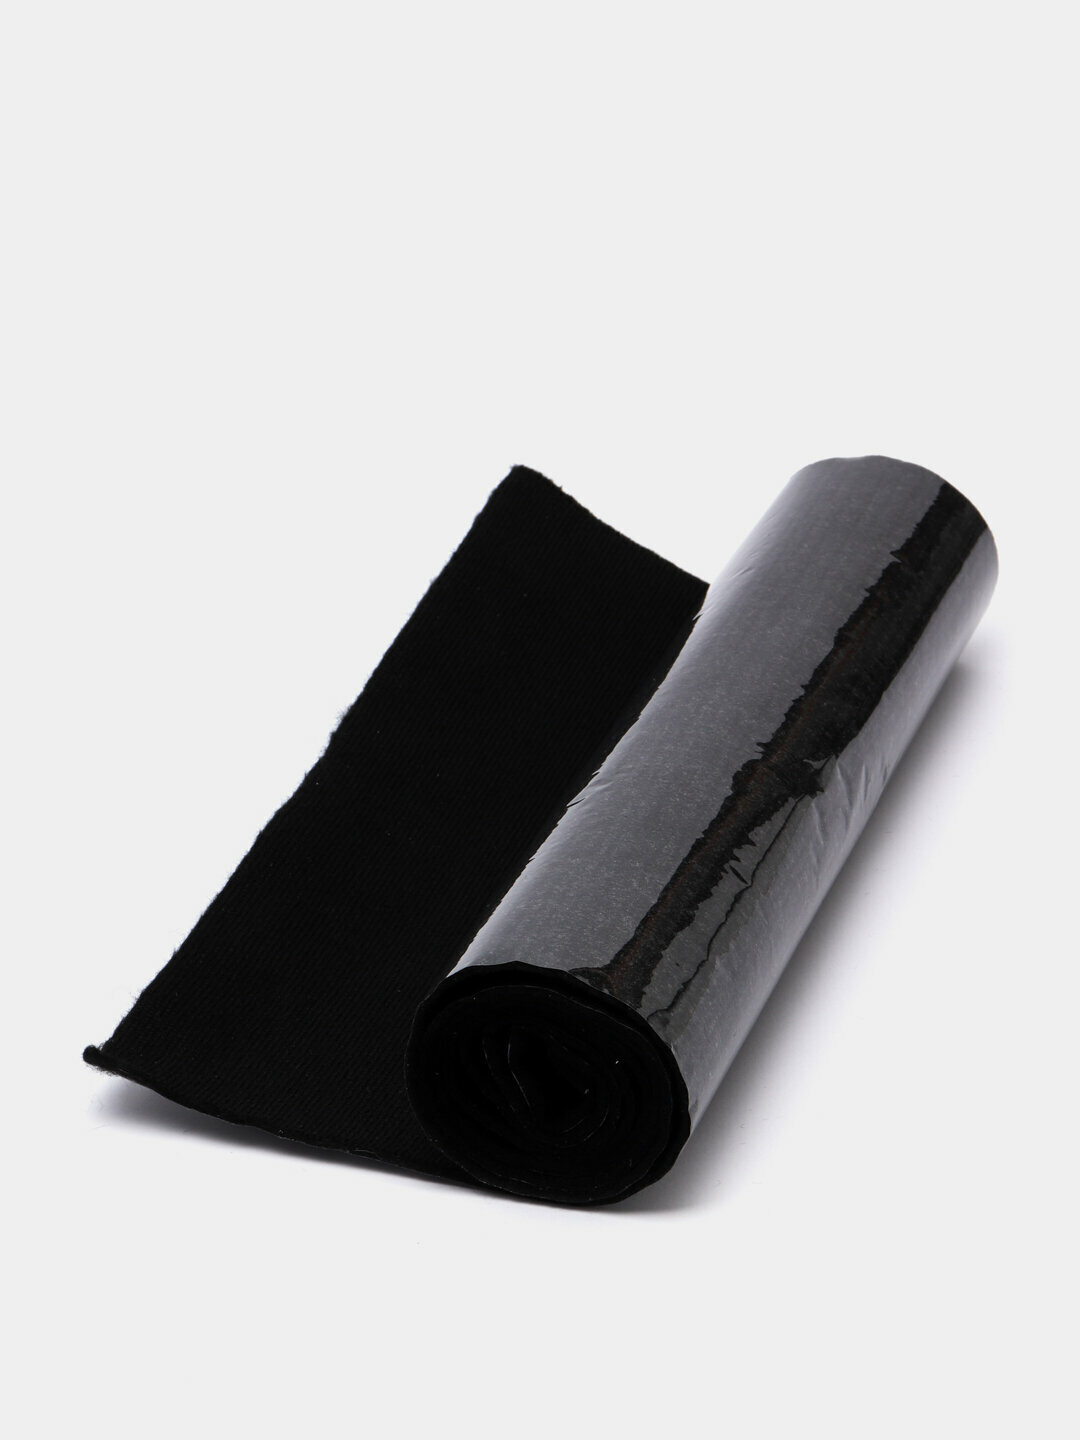 Антискрипный материал (маделин) Шумофф Specific Антискрип ленты от 2 см до 30 см на 1метр Ширина 200 мм.